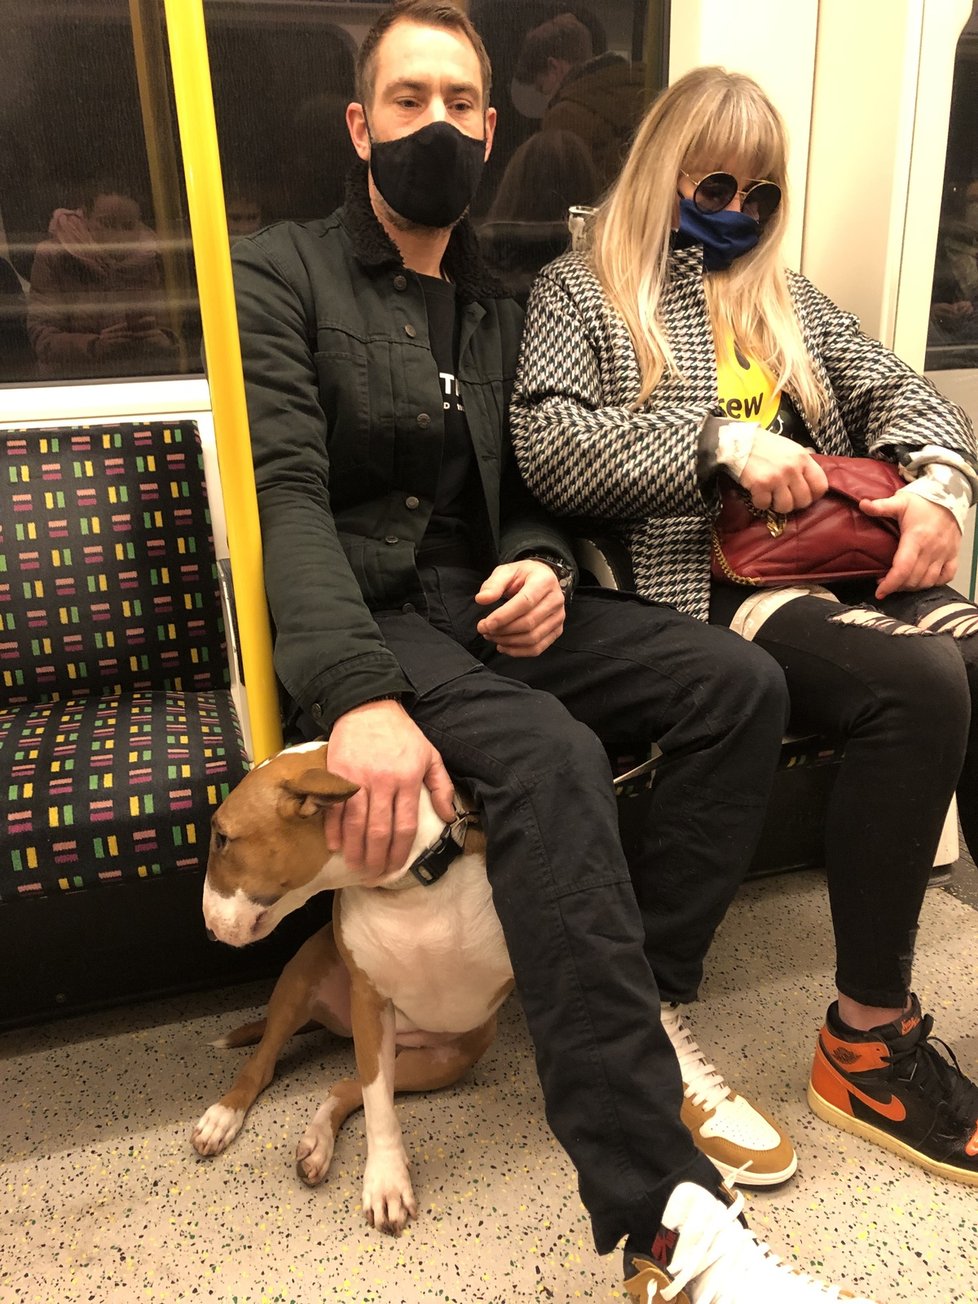 Někteří lidé v metru roušky poctivě nosí.